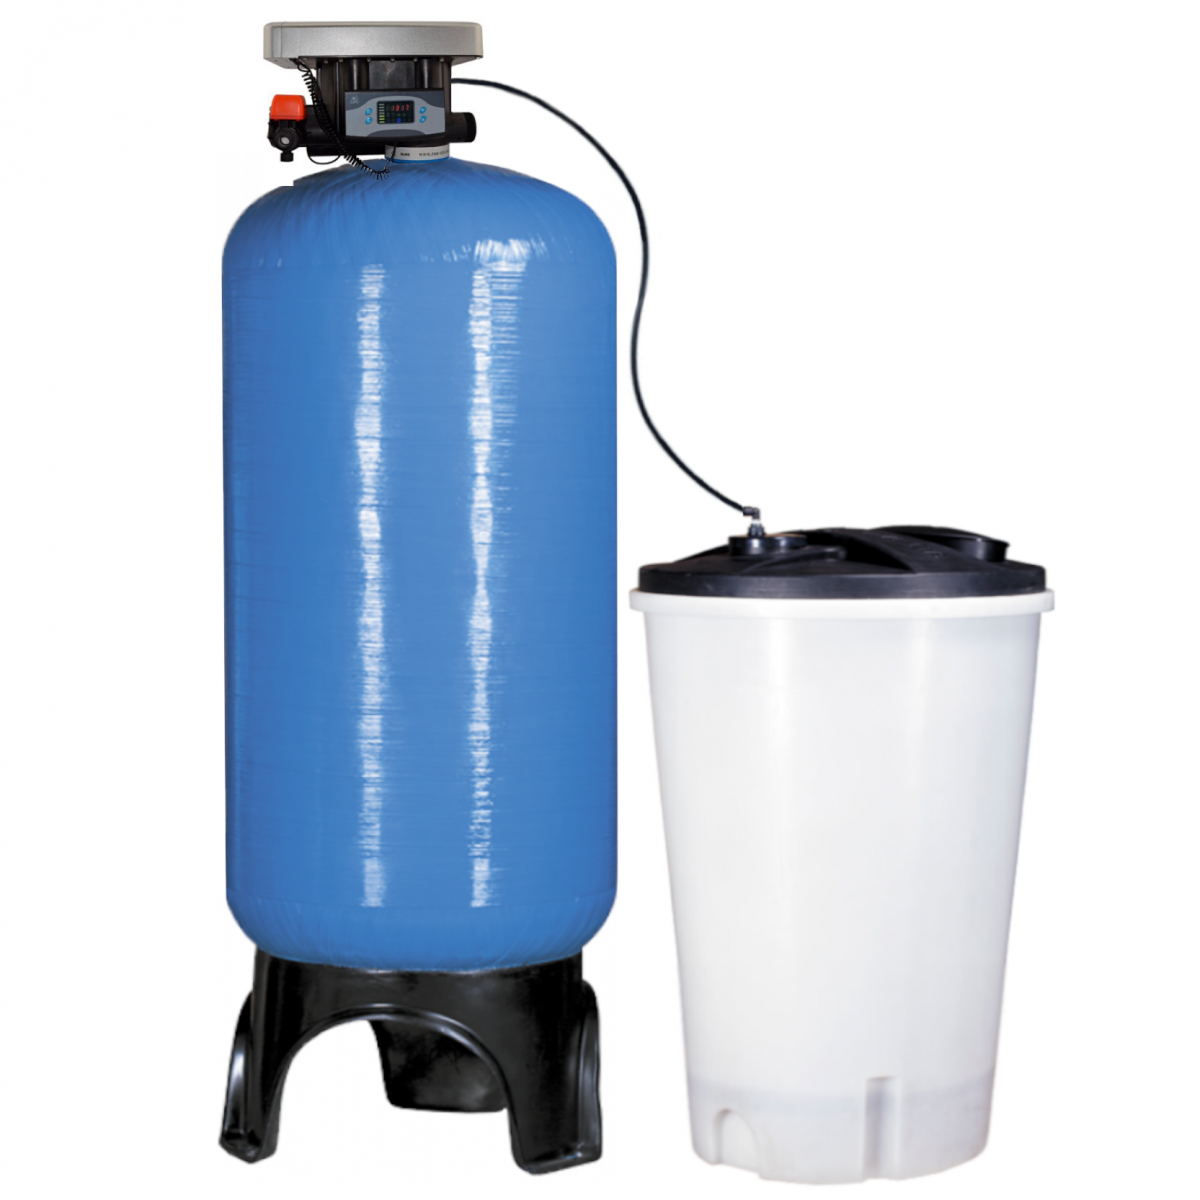 Фильтр смягчает воду. Умягчитель воды Clack 1054 с солевым баком. Умягчитель 3672. Фильтр умягчения воды fu1665ci. Умягчитель воды 600 л/ч.